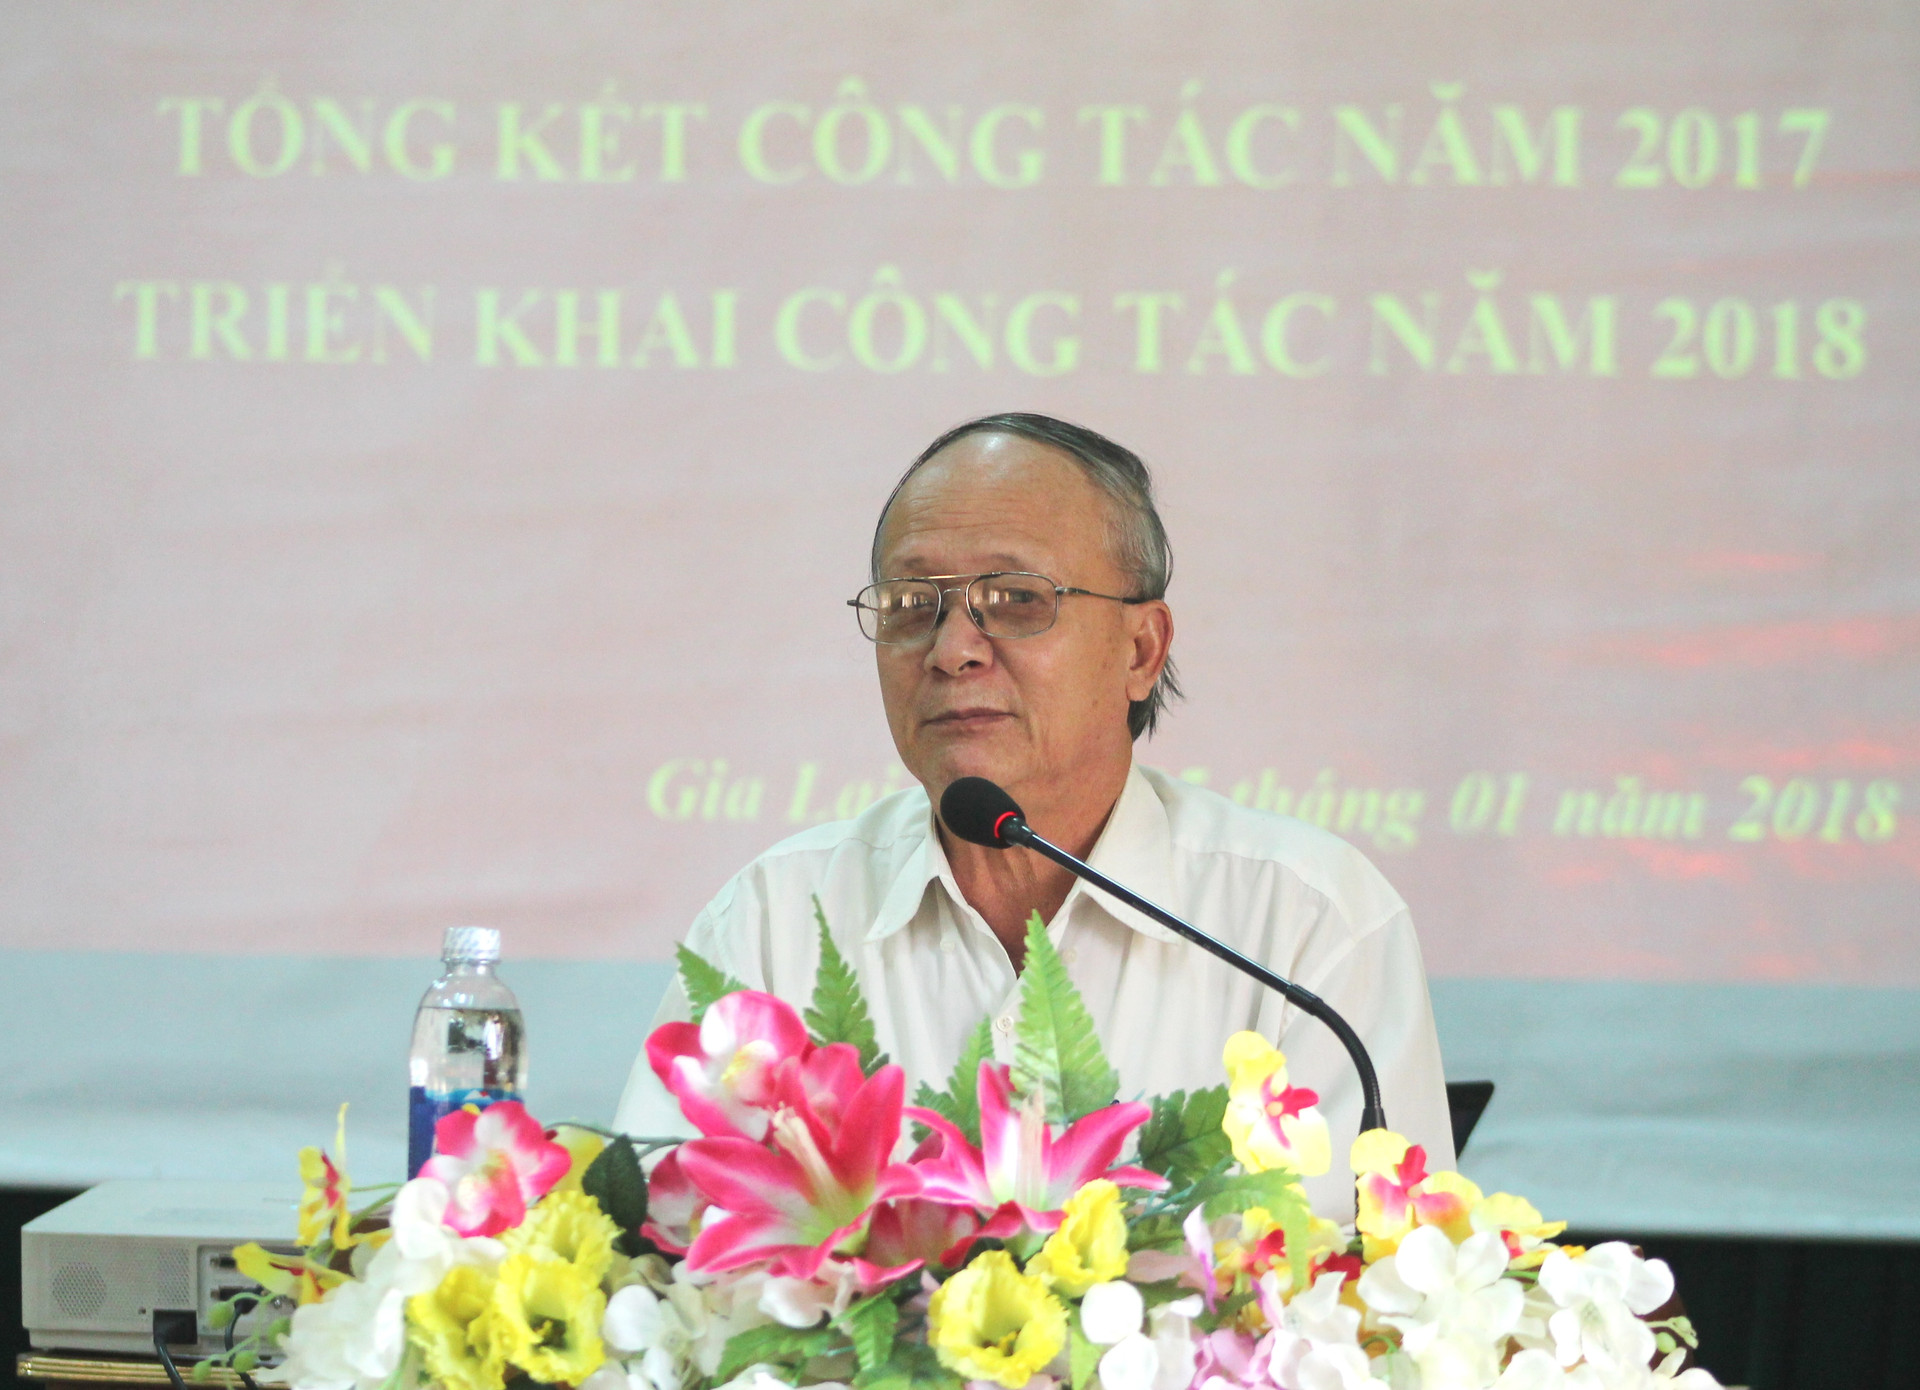 Đoàn HTND tỉnh Gia Lai tổng kết công tác năm 2017 và triển khai công tác năm 2018